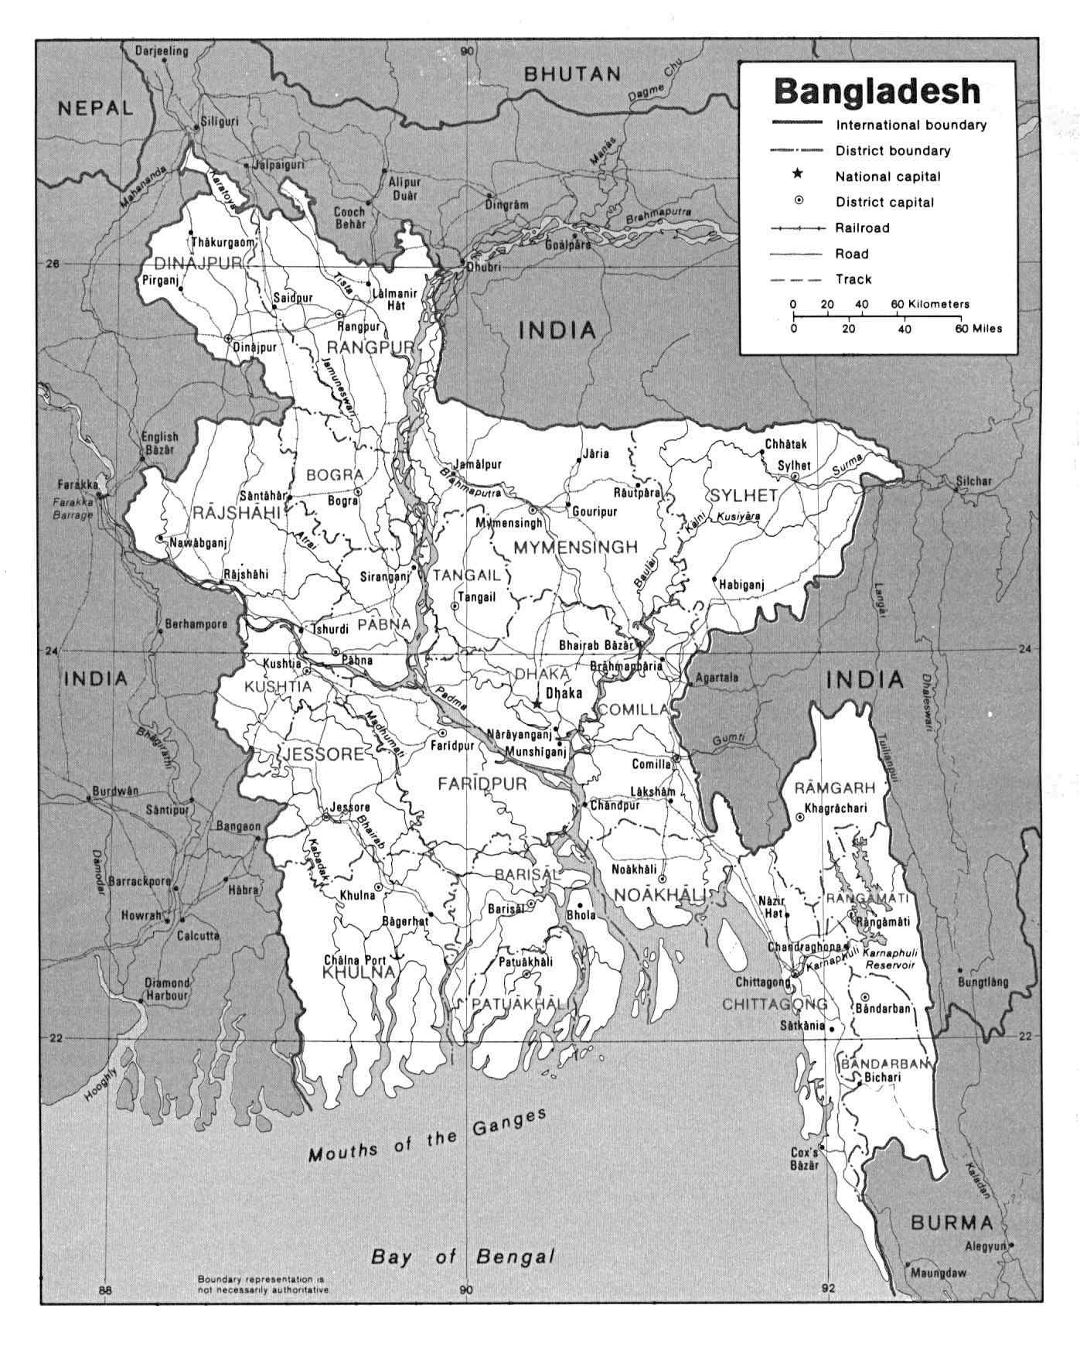 Grande mapa político y administrativo de Bangladesh con carreteras y principales ciudades